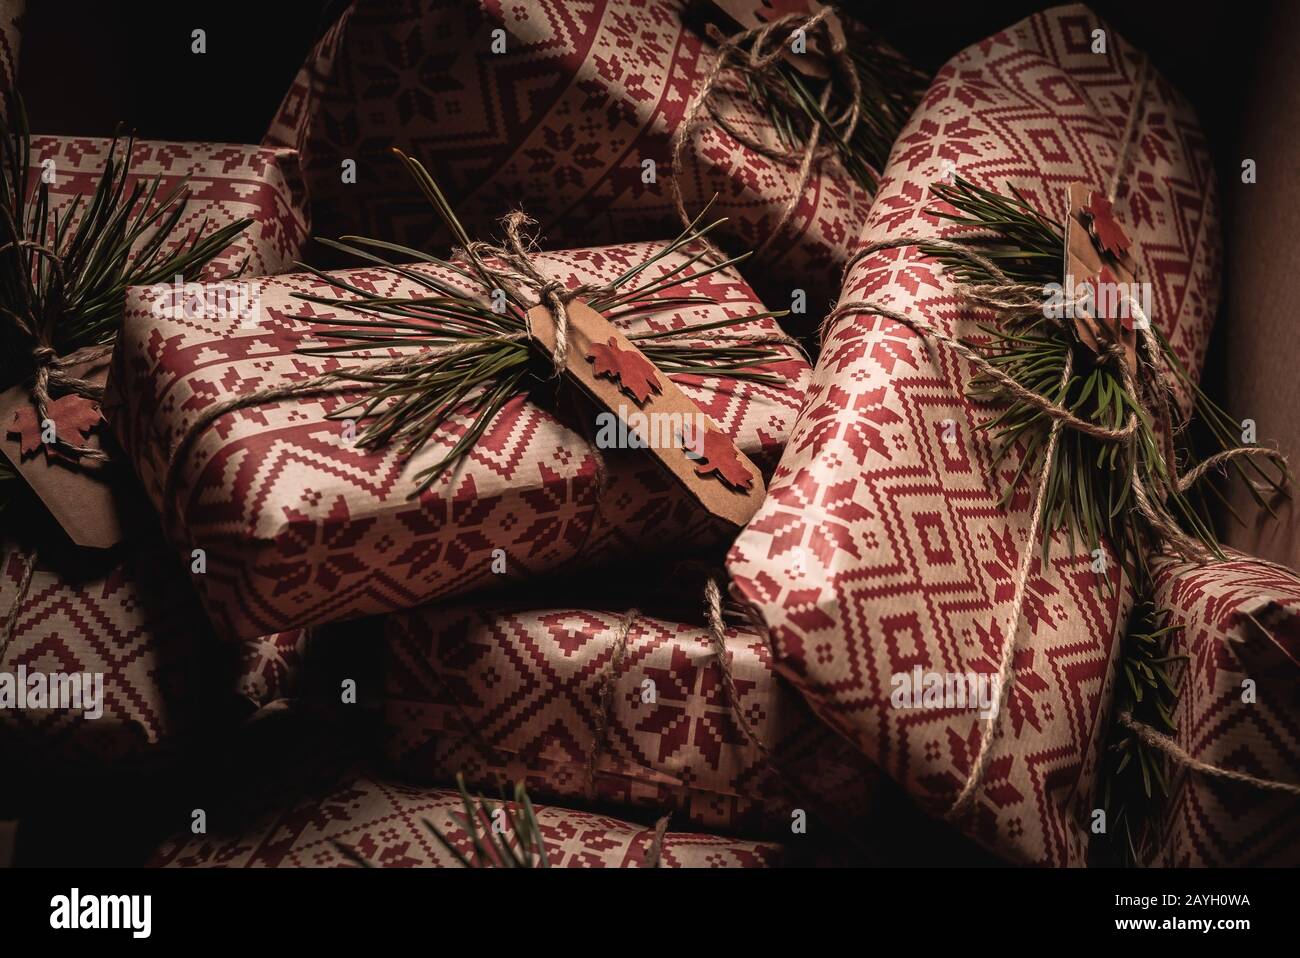 Viele weihnachtsgeschenke in einer Schachtel mit kreativem, handgefertigtem dekorativem, rustikalem baugeschenk, verpackt in einem natürlichen Vintage-Retro-Geschenkpapier Stockfoto